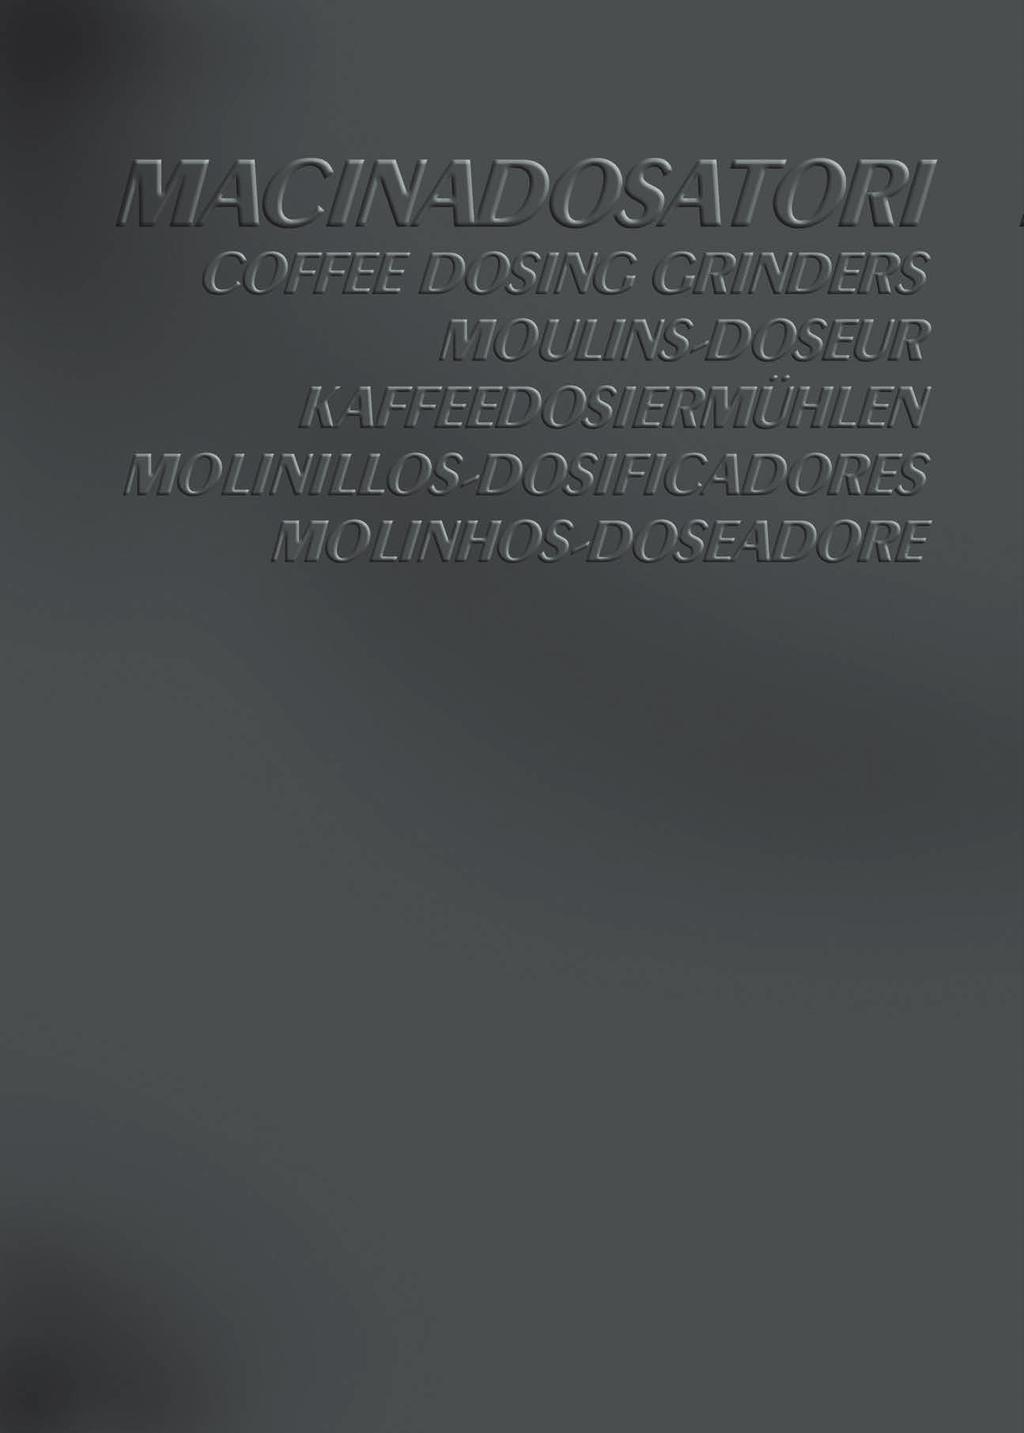 Macinadosatori 2011 25032011 15:31 Pagina 8 Cimbali produce macchine per caffè espresso e cappuccino dal 1912.